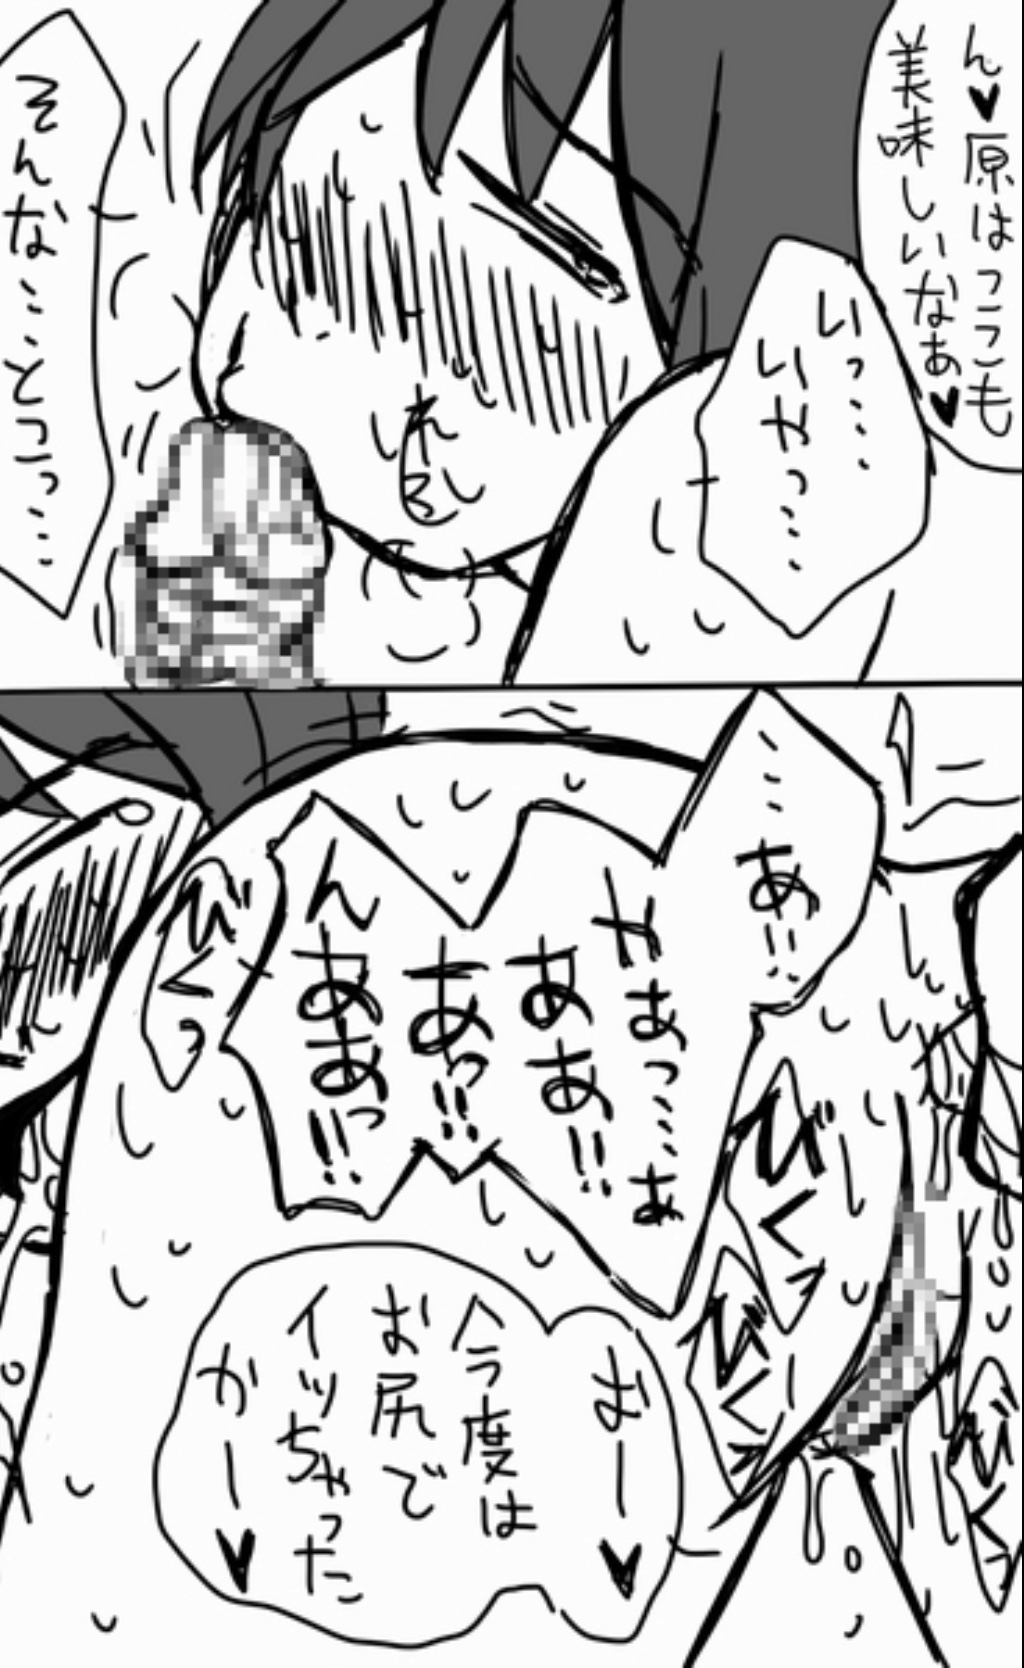 [Shamotto Murata] Assassination Classroom Story About Takaoka Marrying Hazama And Hara 2 19